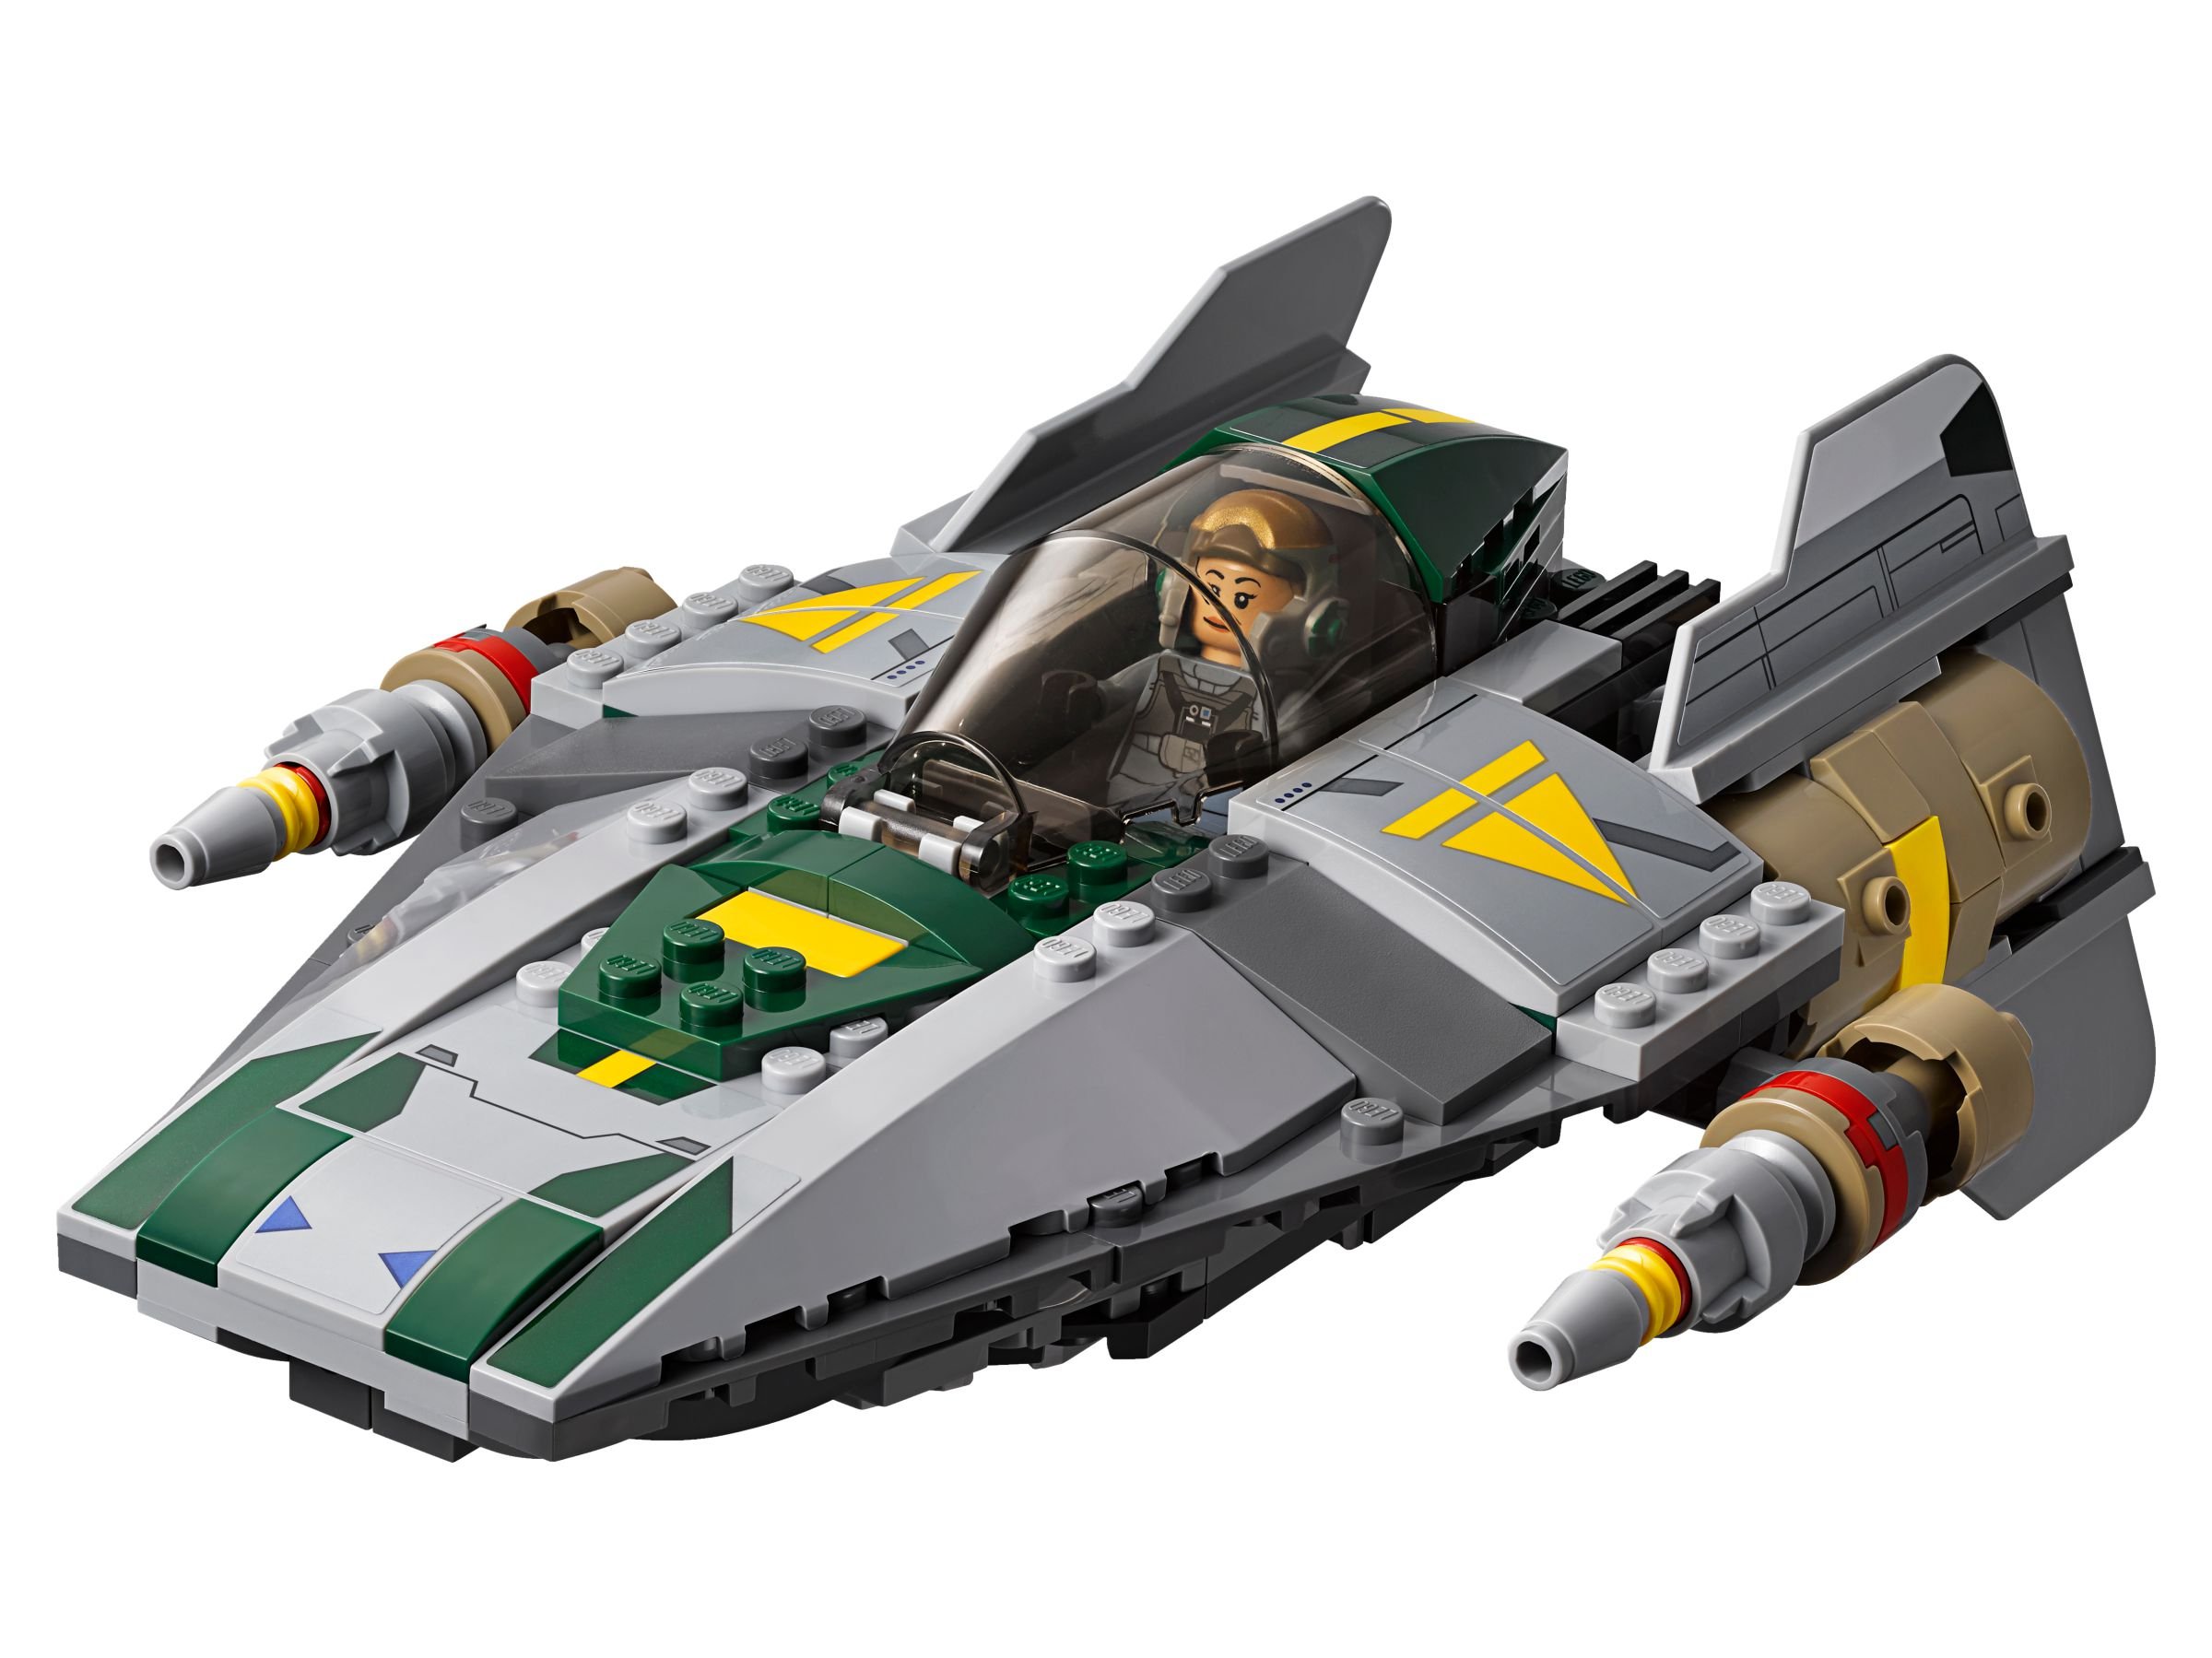 LEGO Star Wars 75150 Vader's TIE Advanced vs. A-Wing Starfighter LEGO_75150_alt4.jpg